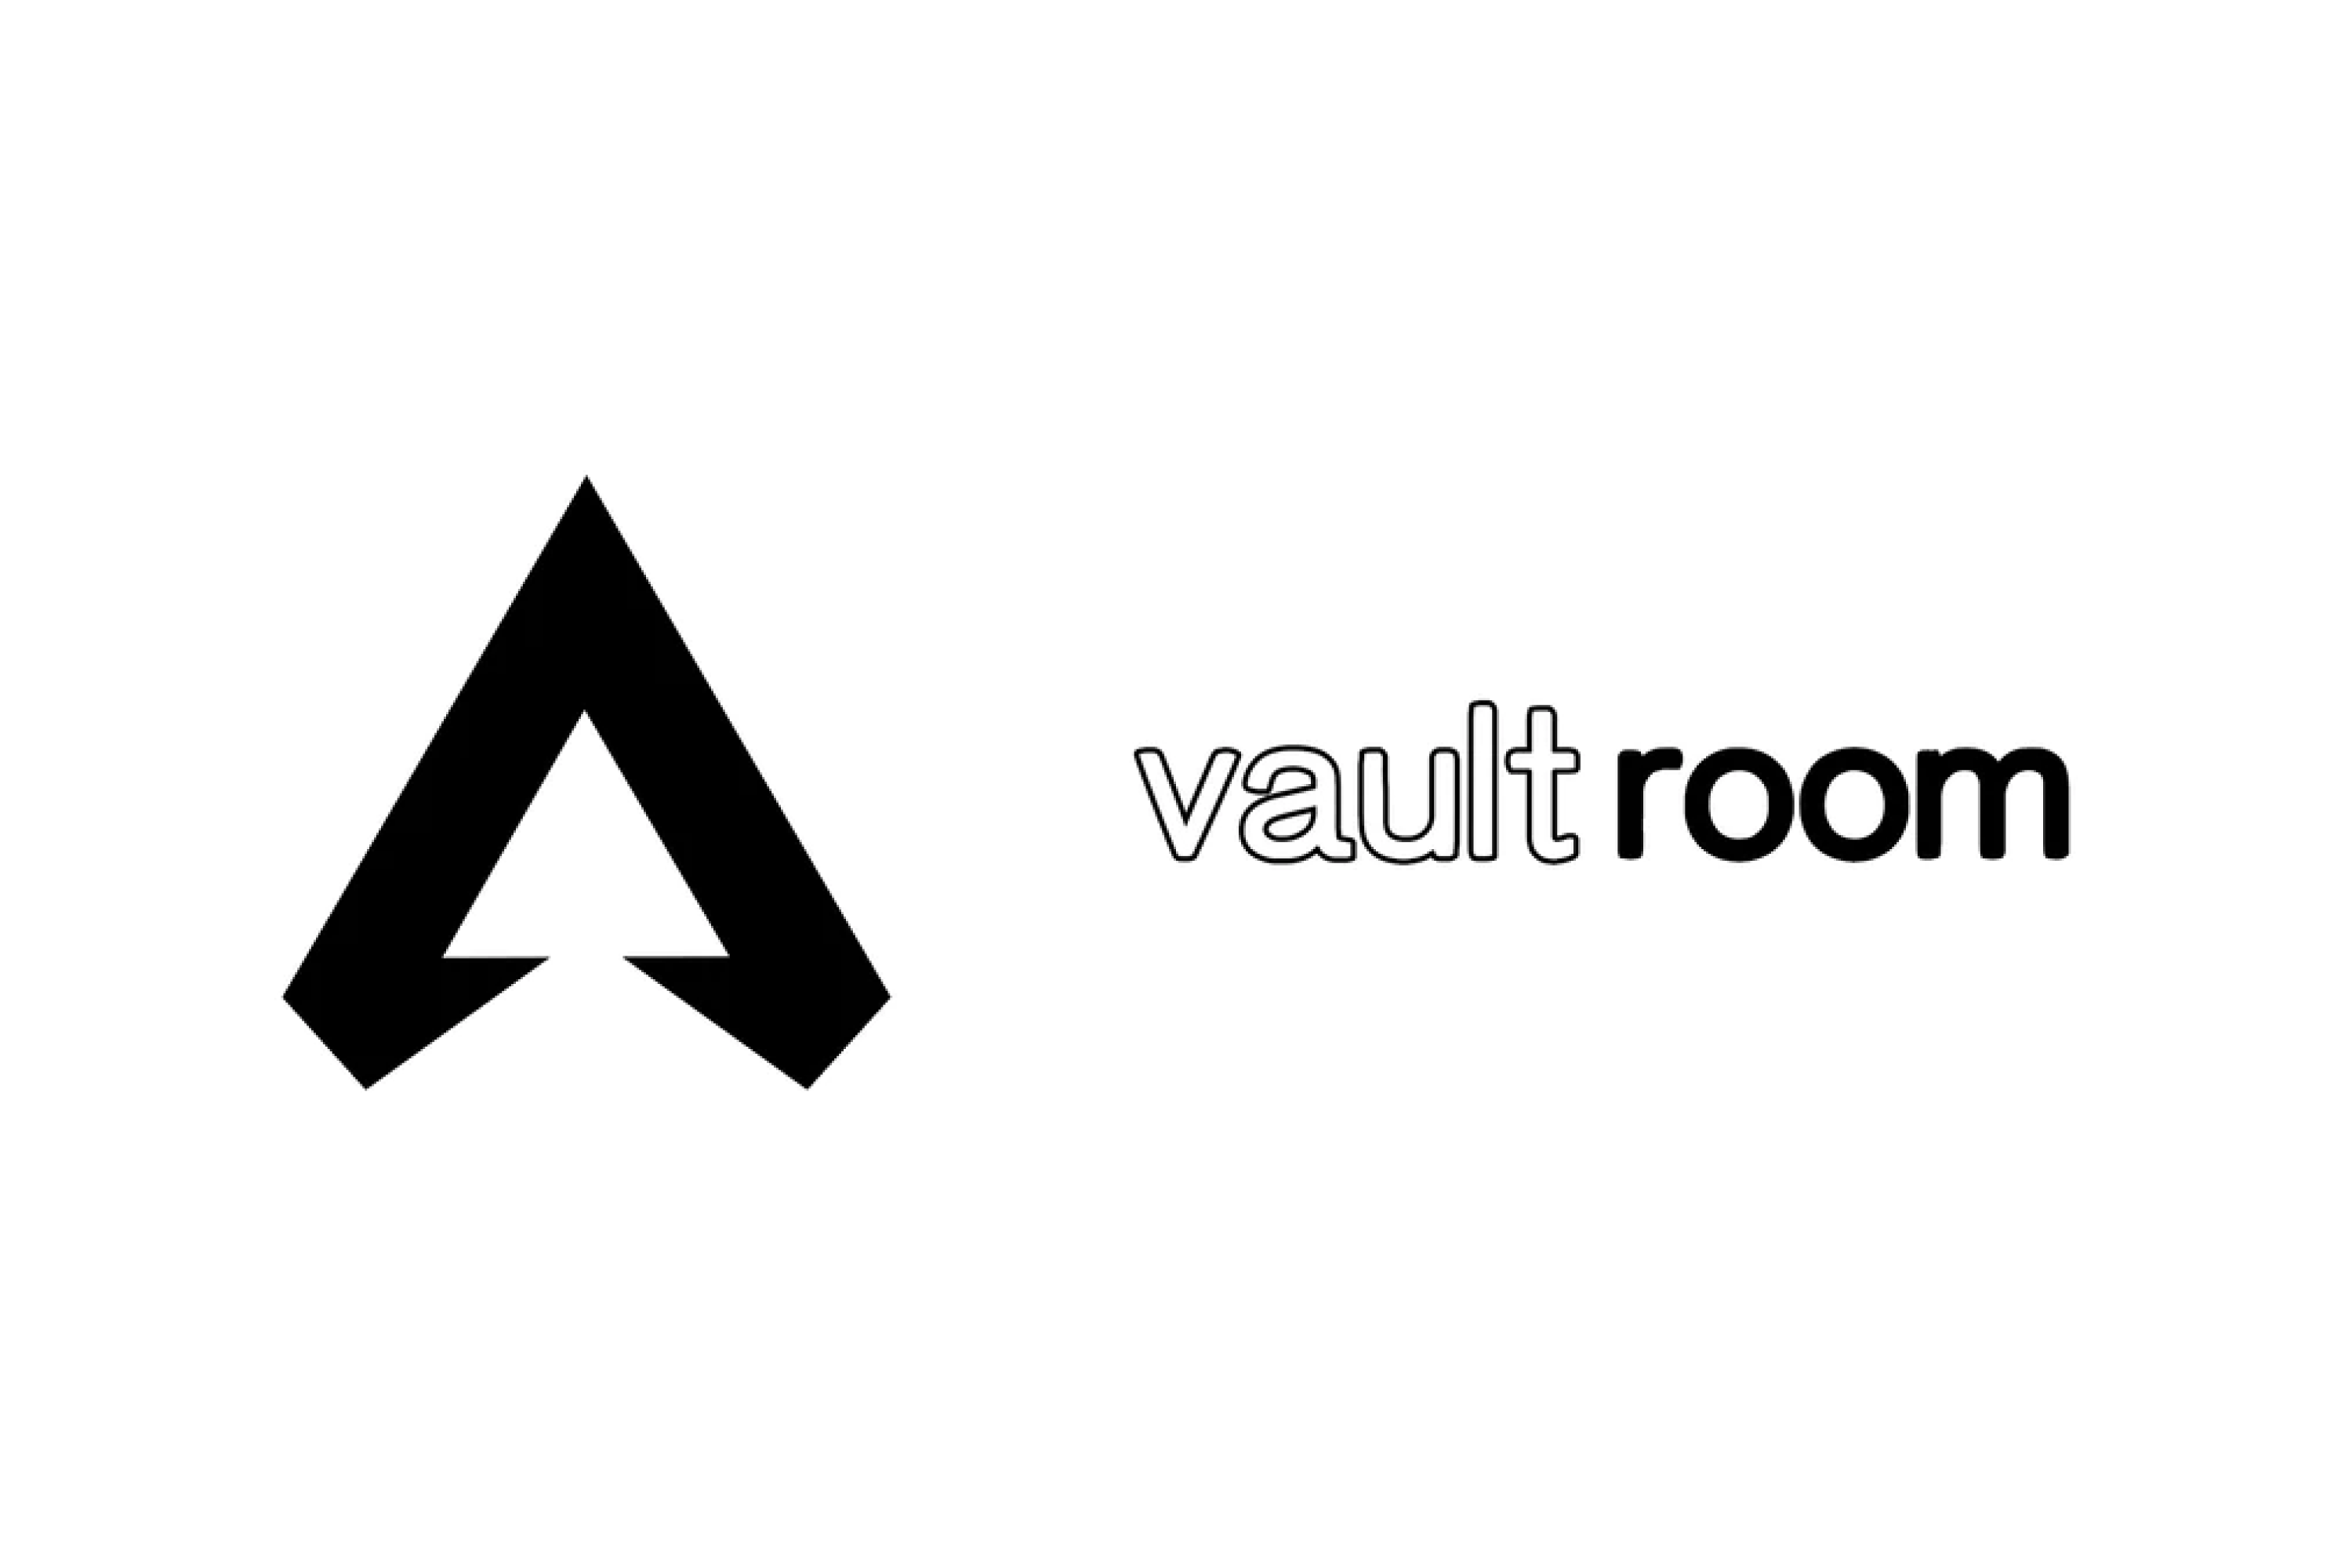 APEX LEGENDS × vault room – VAULTROOM